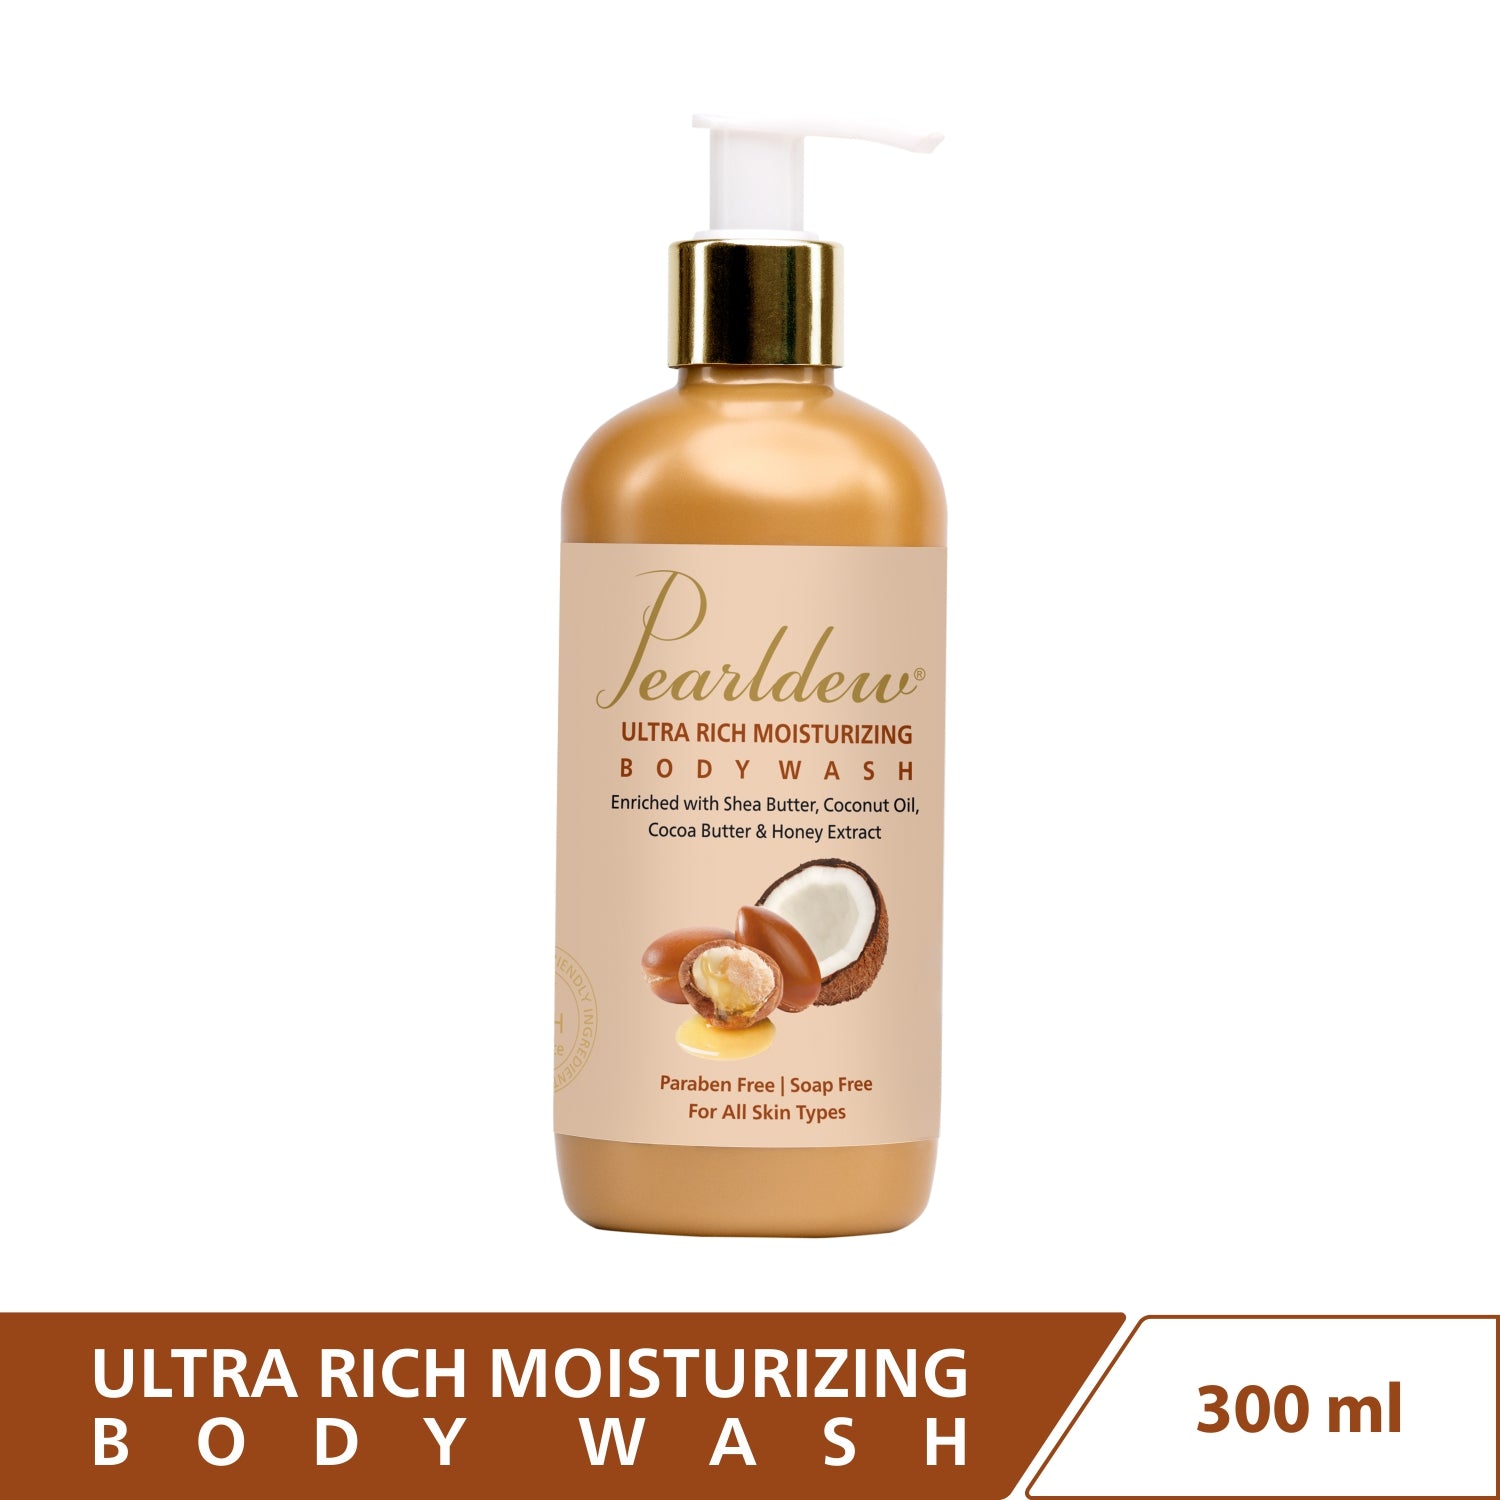 Pearldew Ultra Rich Moisturizing Body Wash (300 ml)